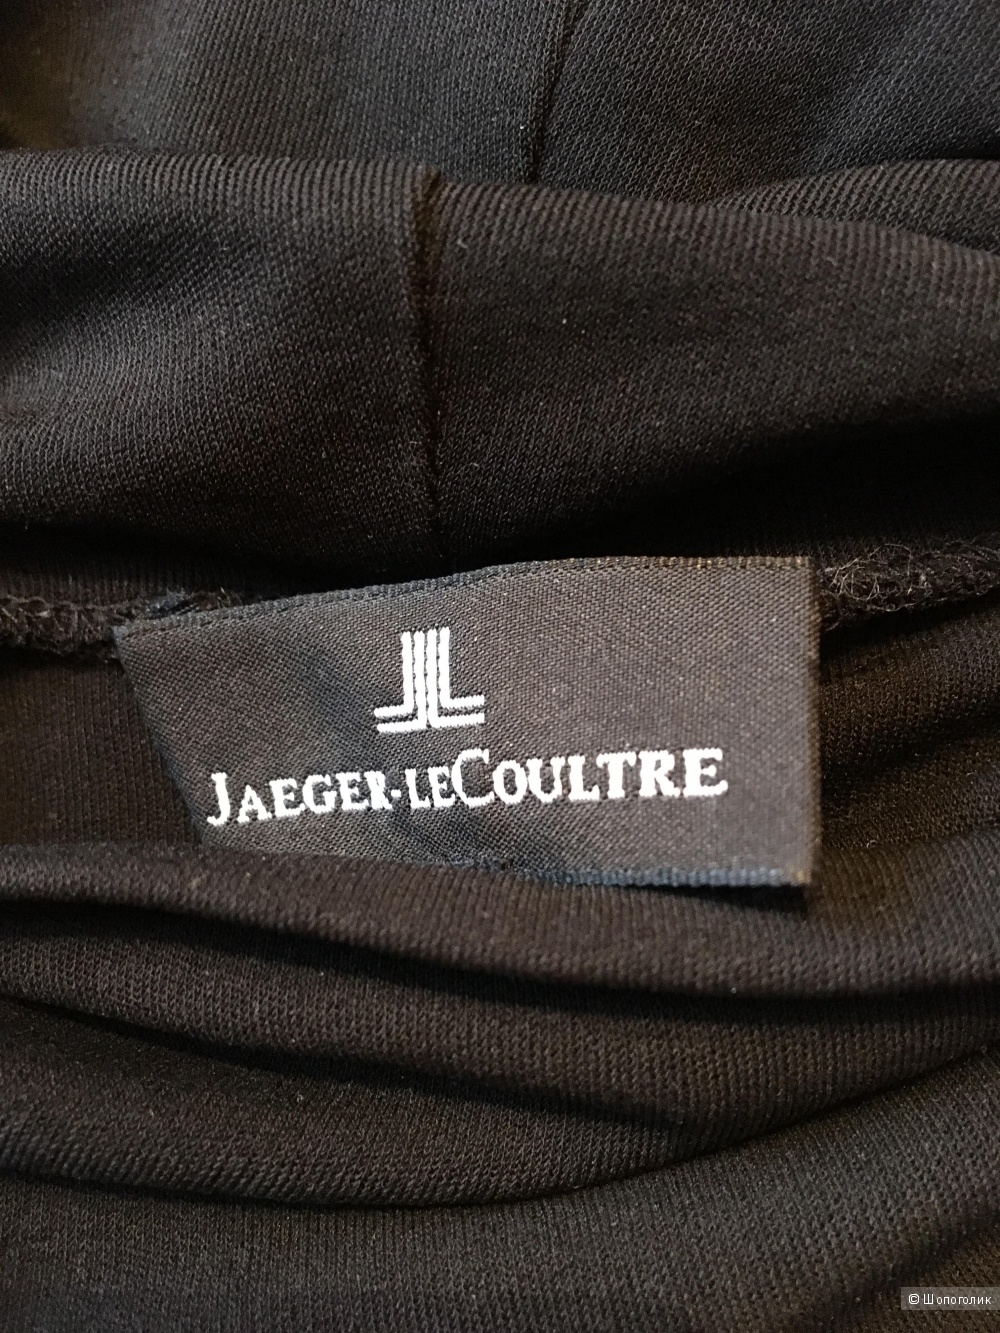 Водолазка Jaeger-LeCoultre размер S